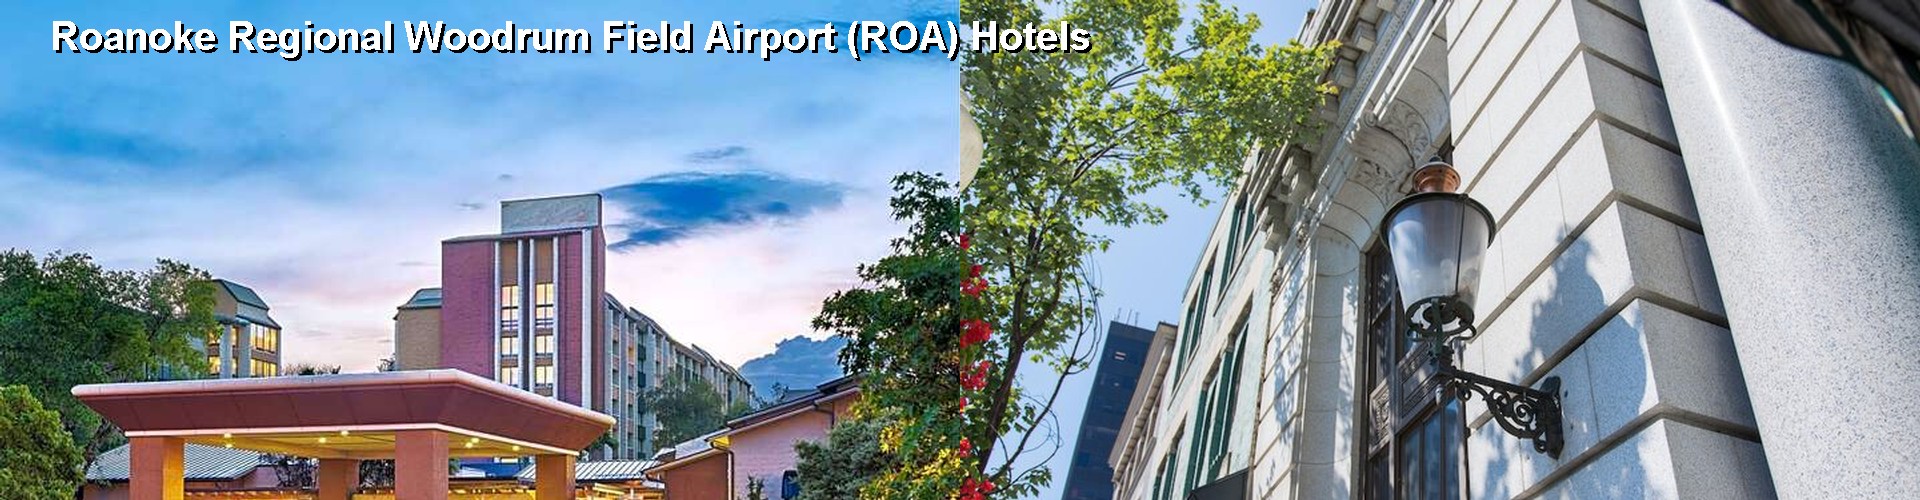 4 Best Hotels near Roanoke Regional Woodrum Field Airport (ROA)